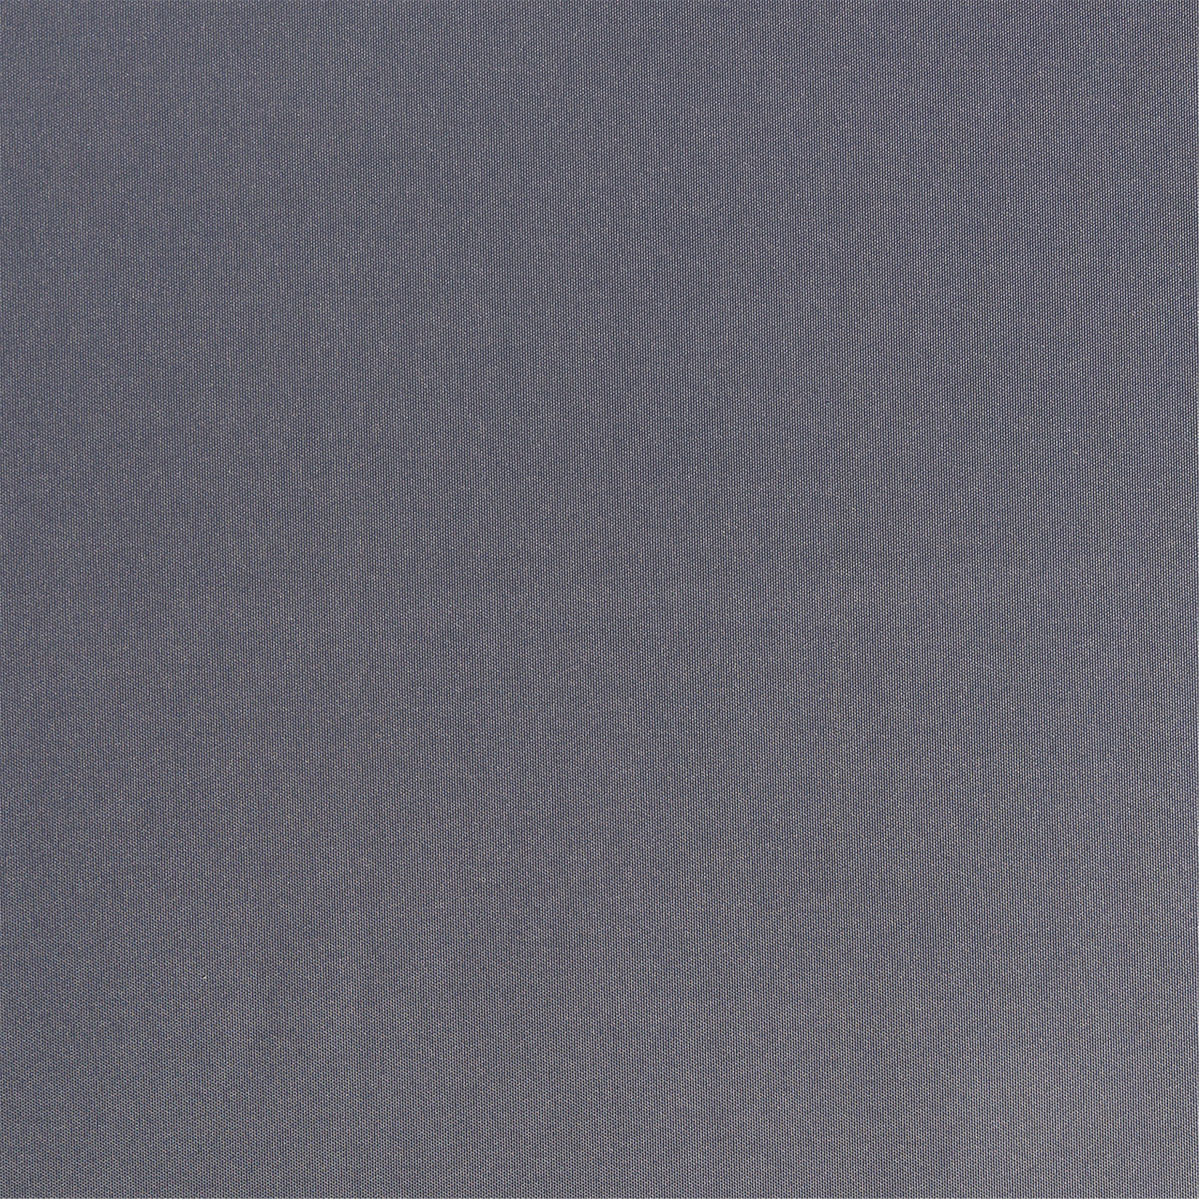 Outdoor-Stoff dunkelgrau uni in 1,6m Breite (METERWARE) Markisenstoff aus 100% Polyester